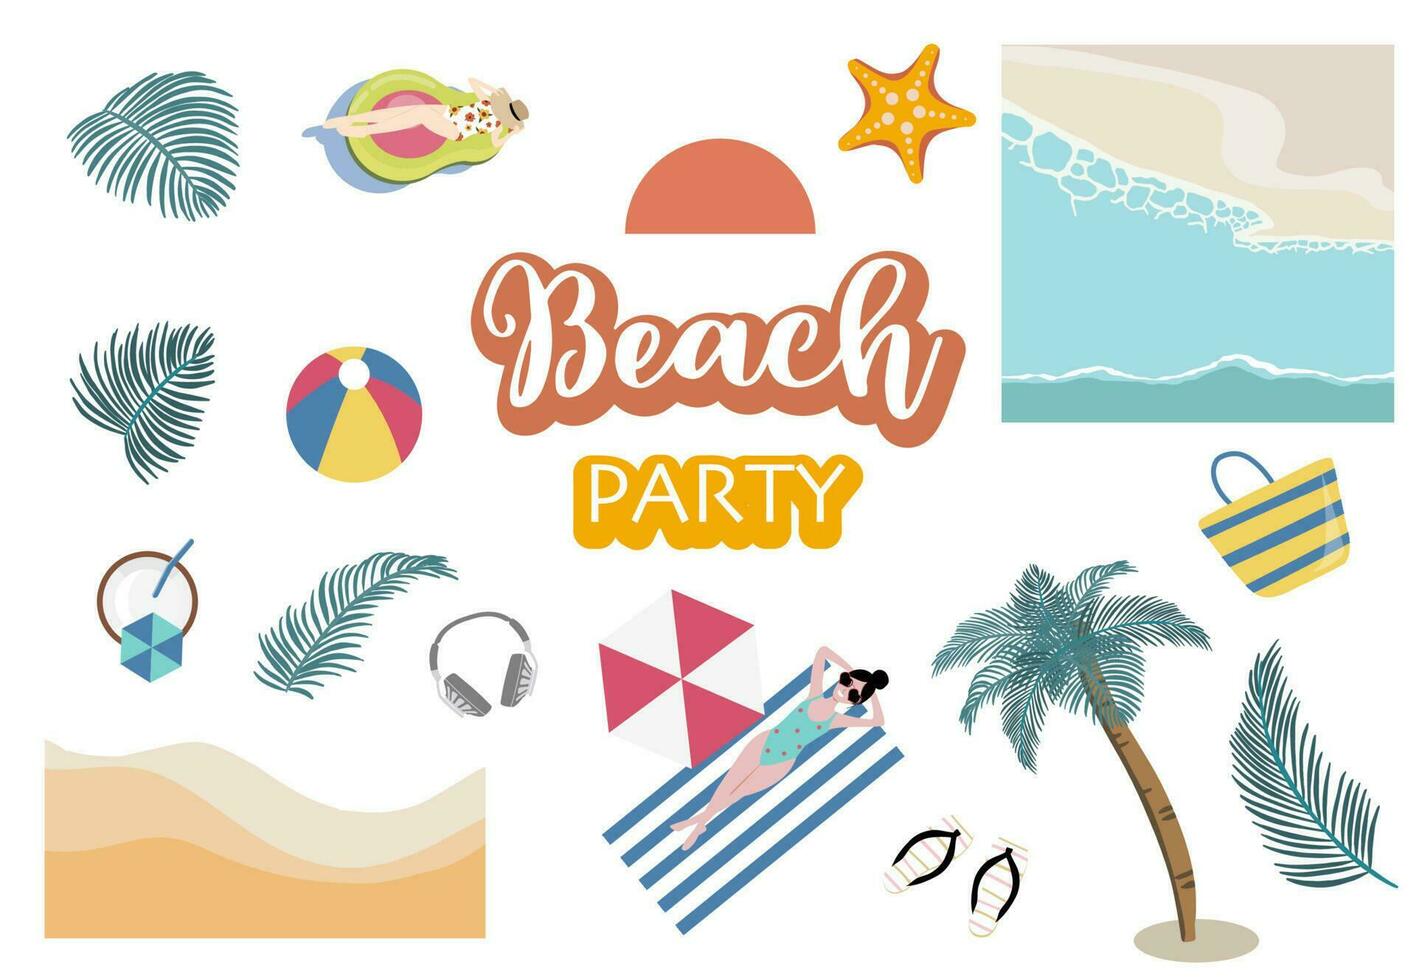 verano objeto con playa, mar, árbol, sol, gente para tarjeta postal vector